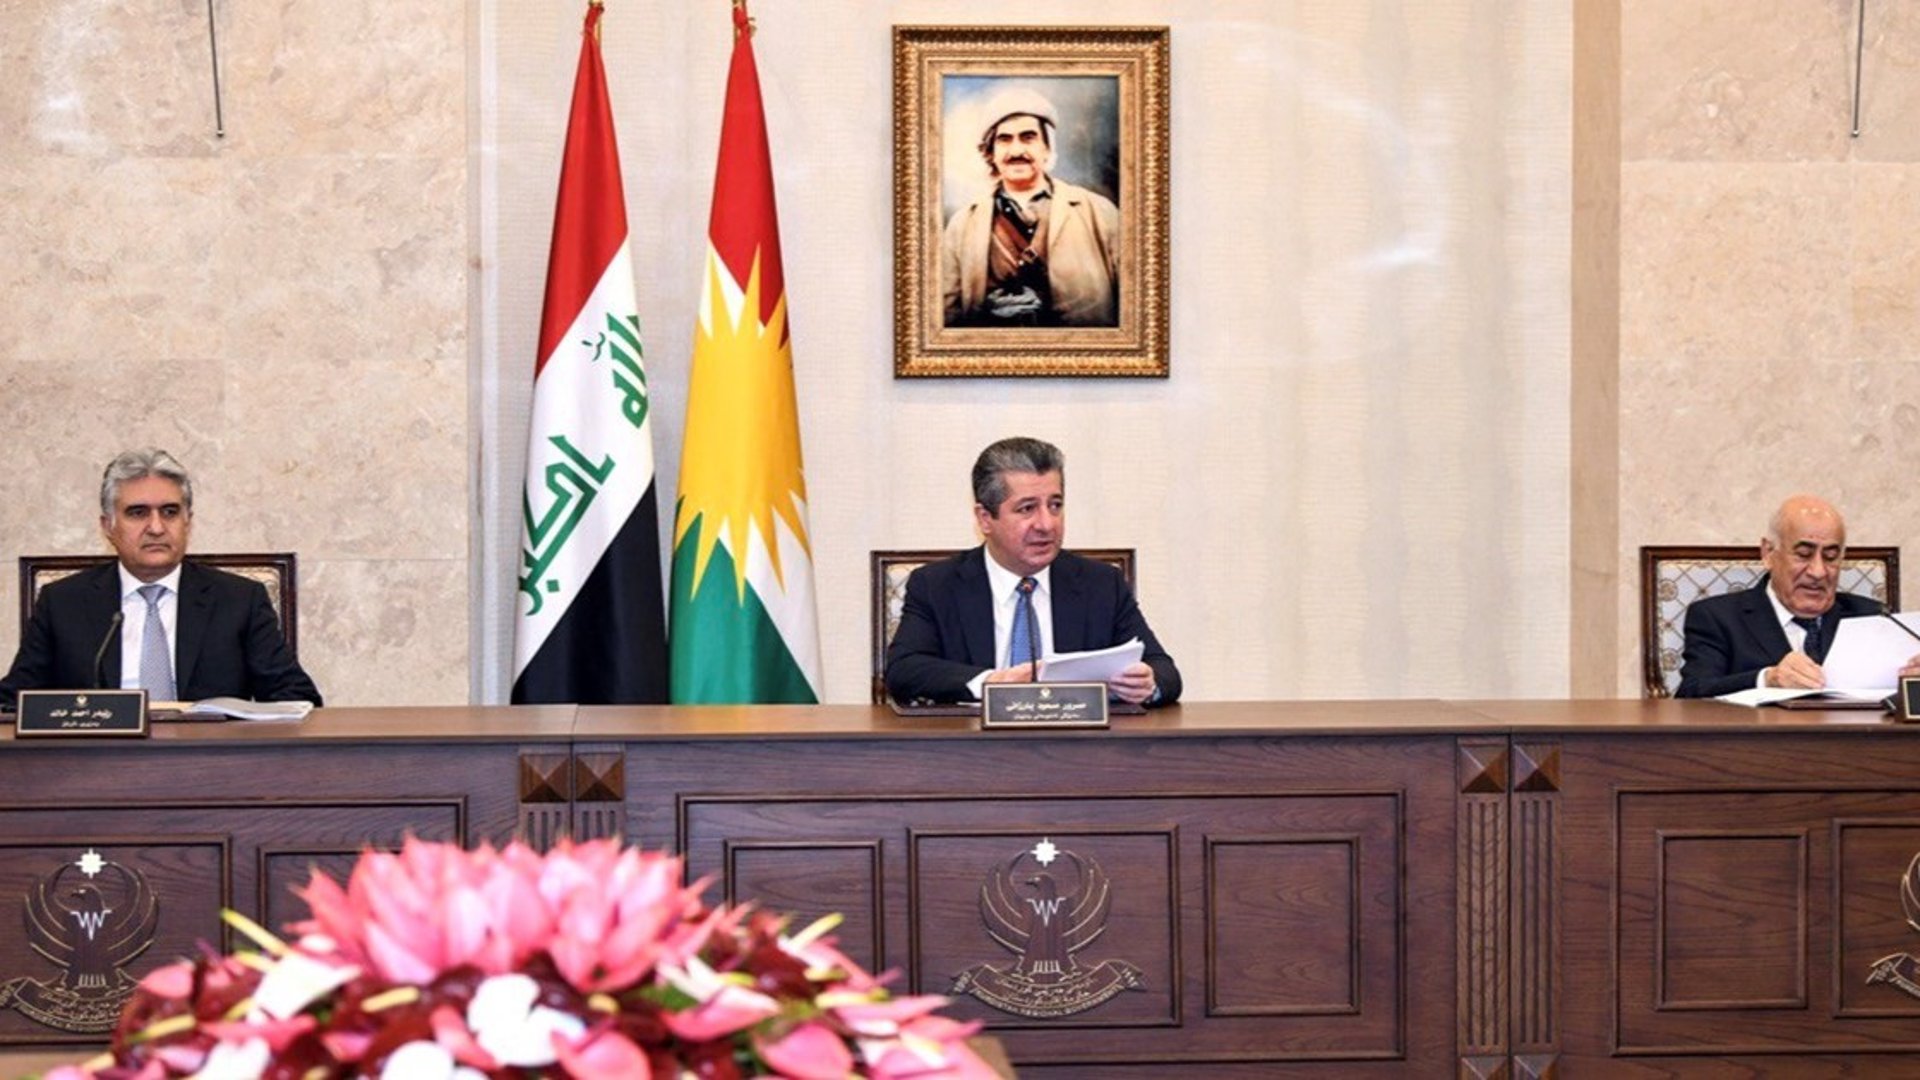 إقليم كردستان يعطل الدوام الرسمي غداً في عيد استقلال جمهورية العراق